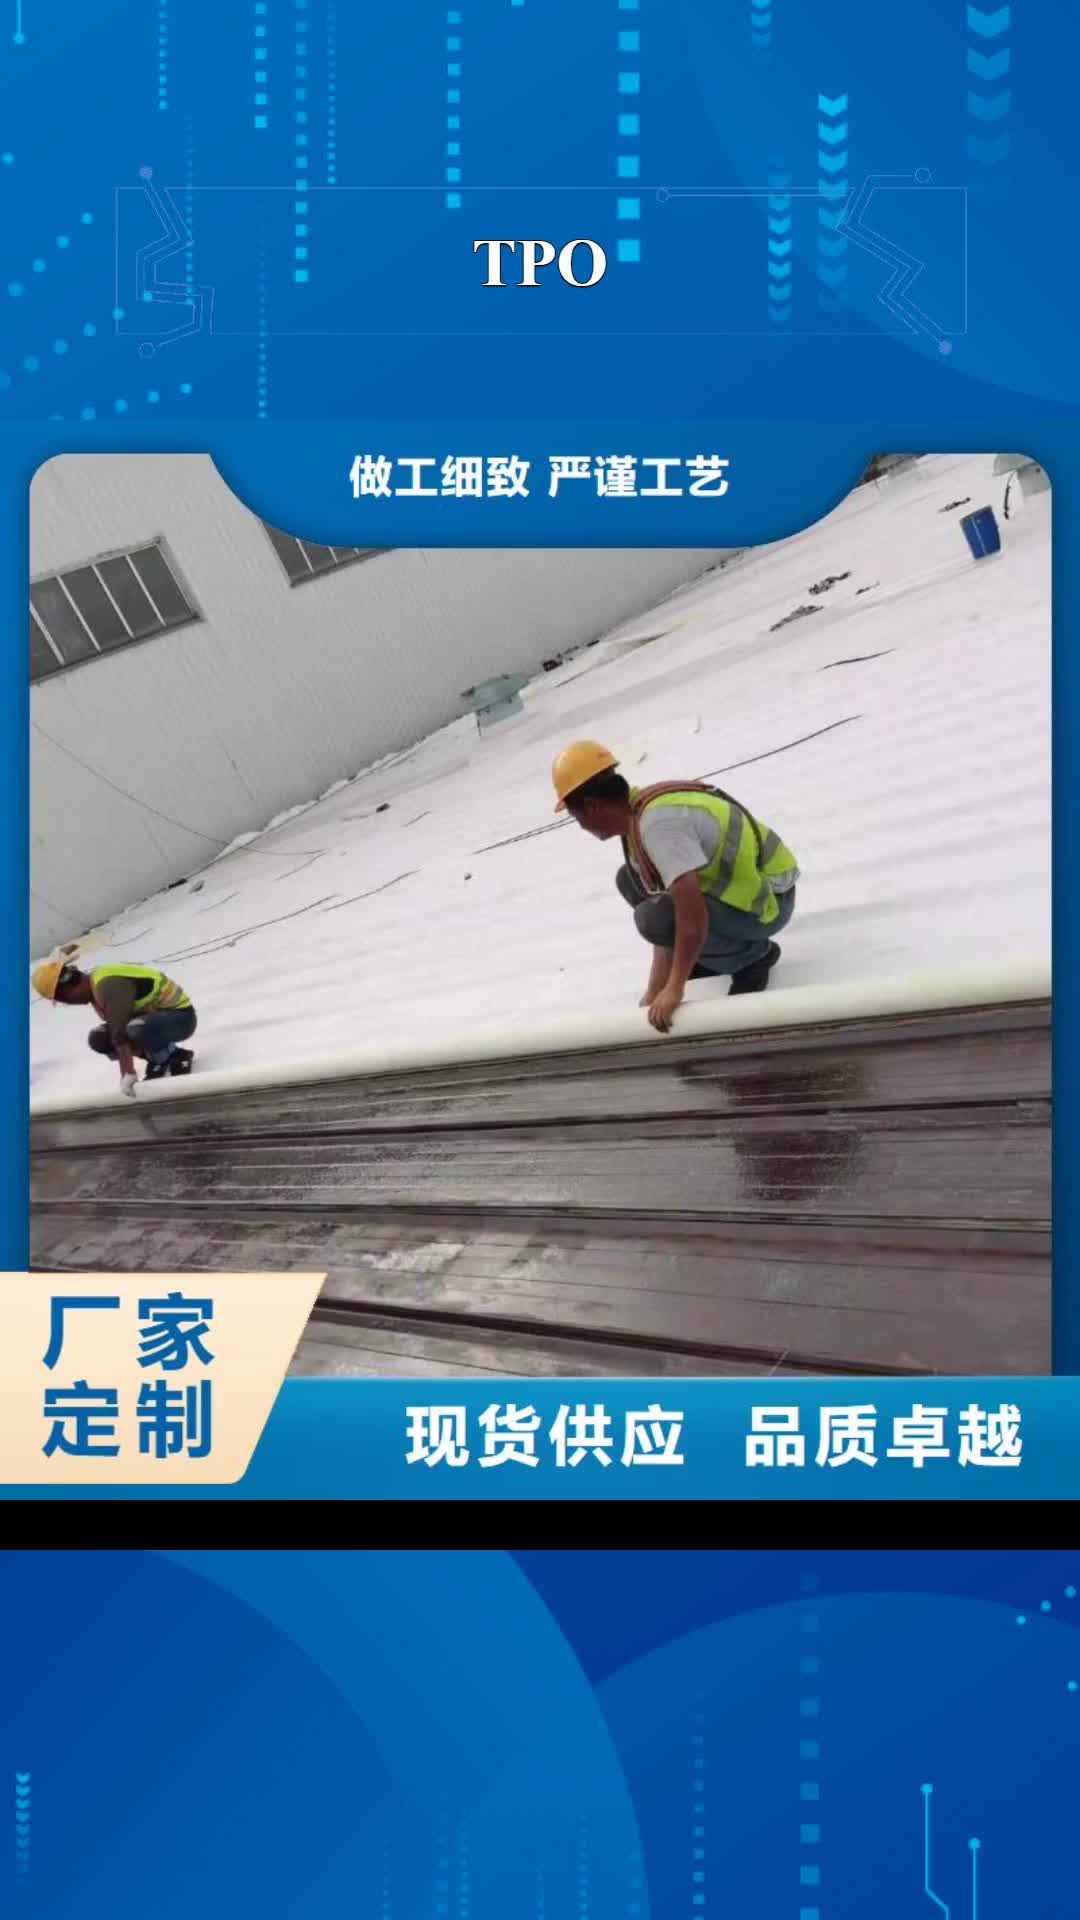 四川【TPO】 PVC防水施工厂家直接面向客户